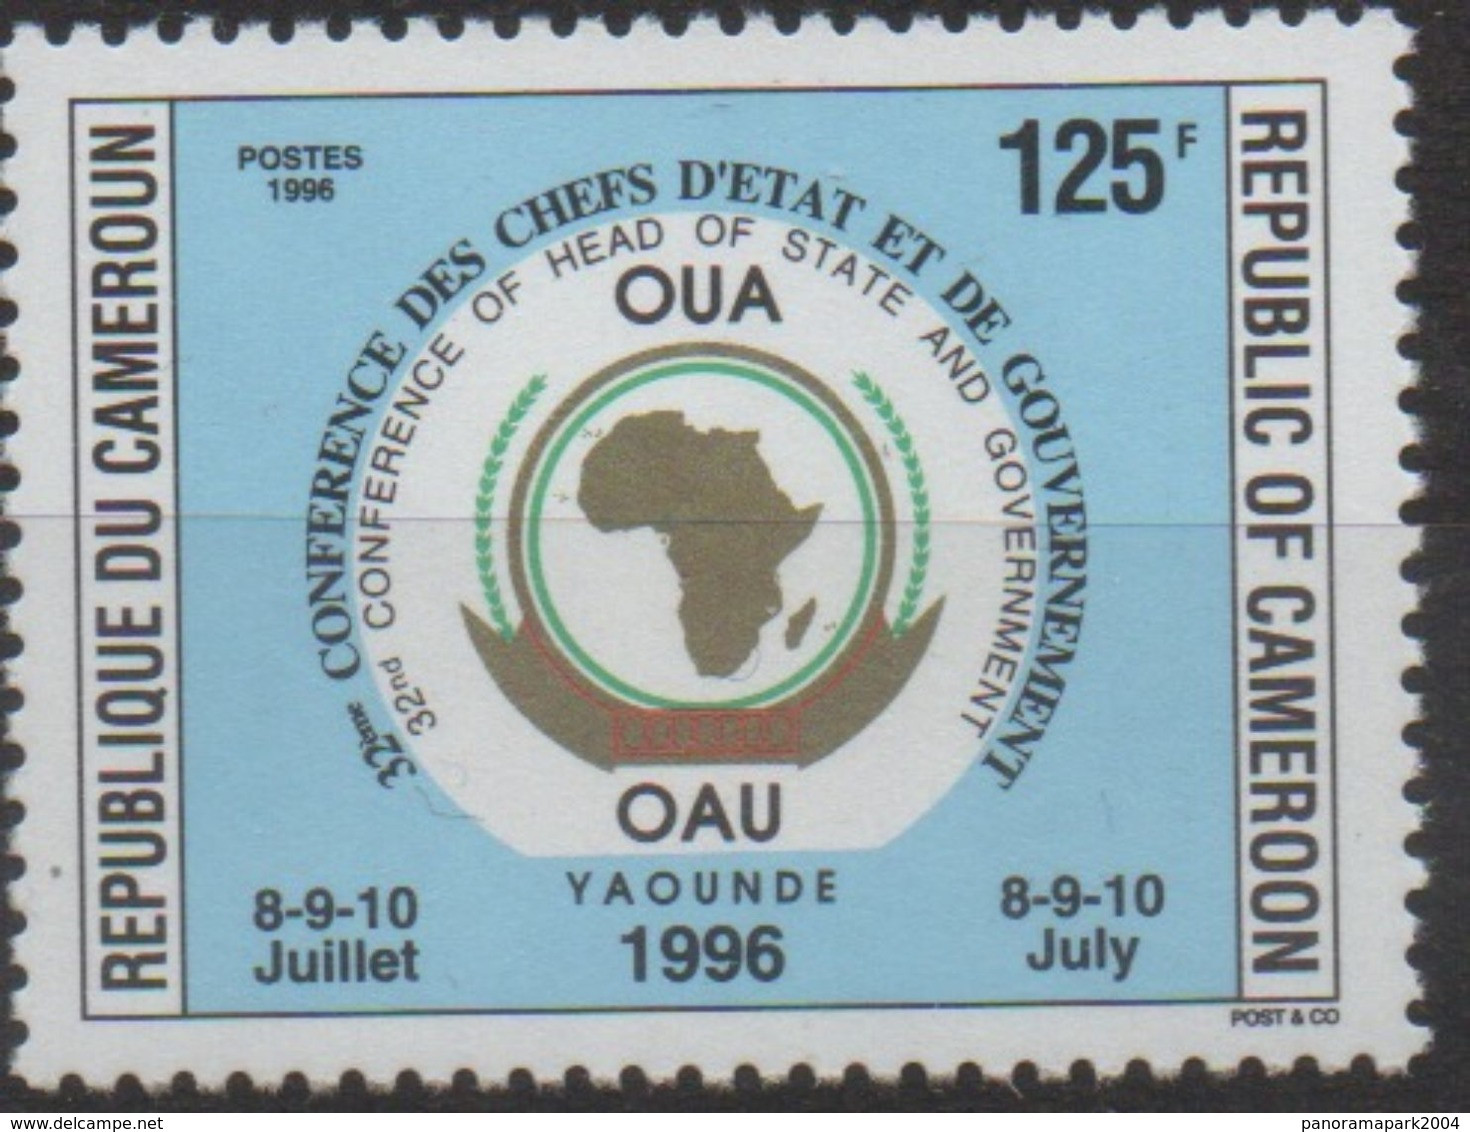 Cameroun Cameroon Kamerun 1996 125F Mi. 1221 OAU OUA Map Landkarte Carte Conférence Chefs D'Etat 8-9-10 Juillet - Cameroun (1960-...)